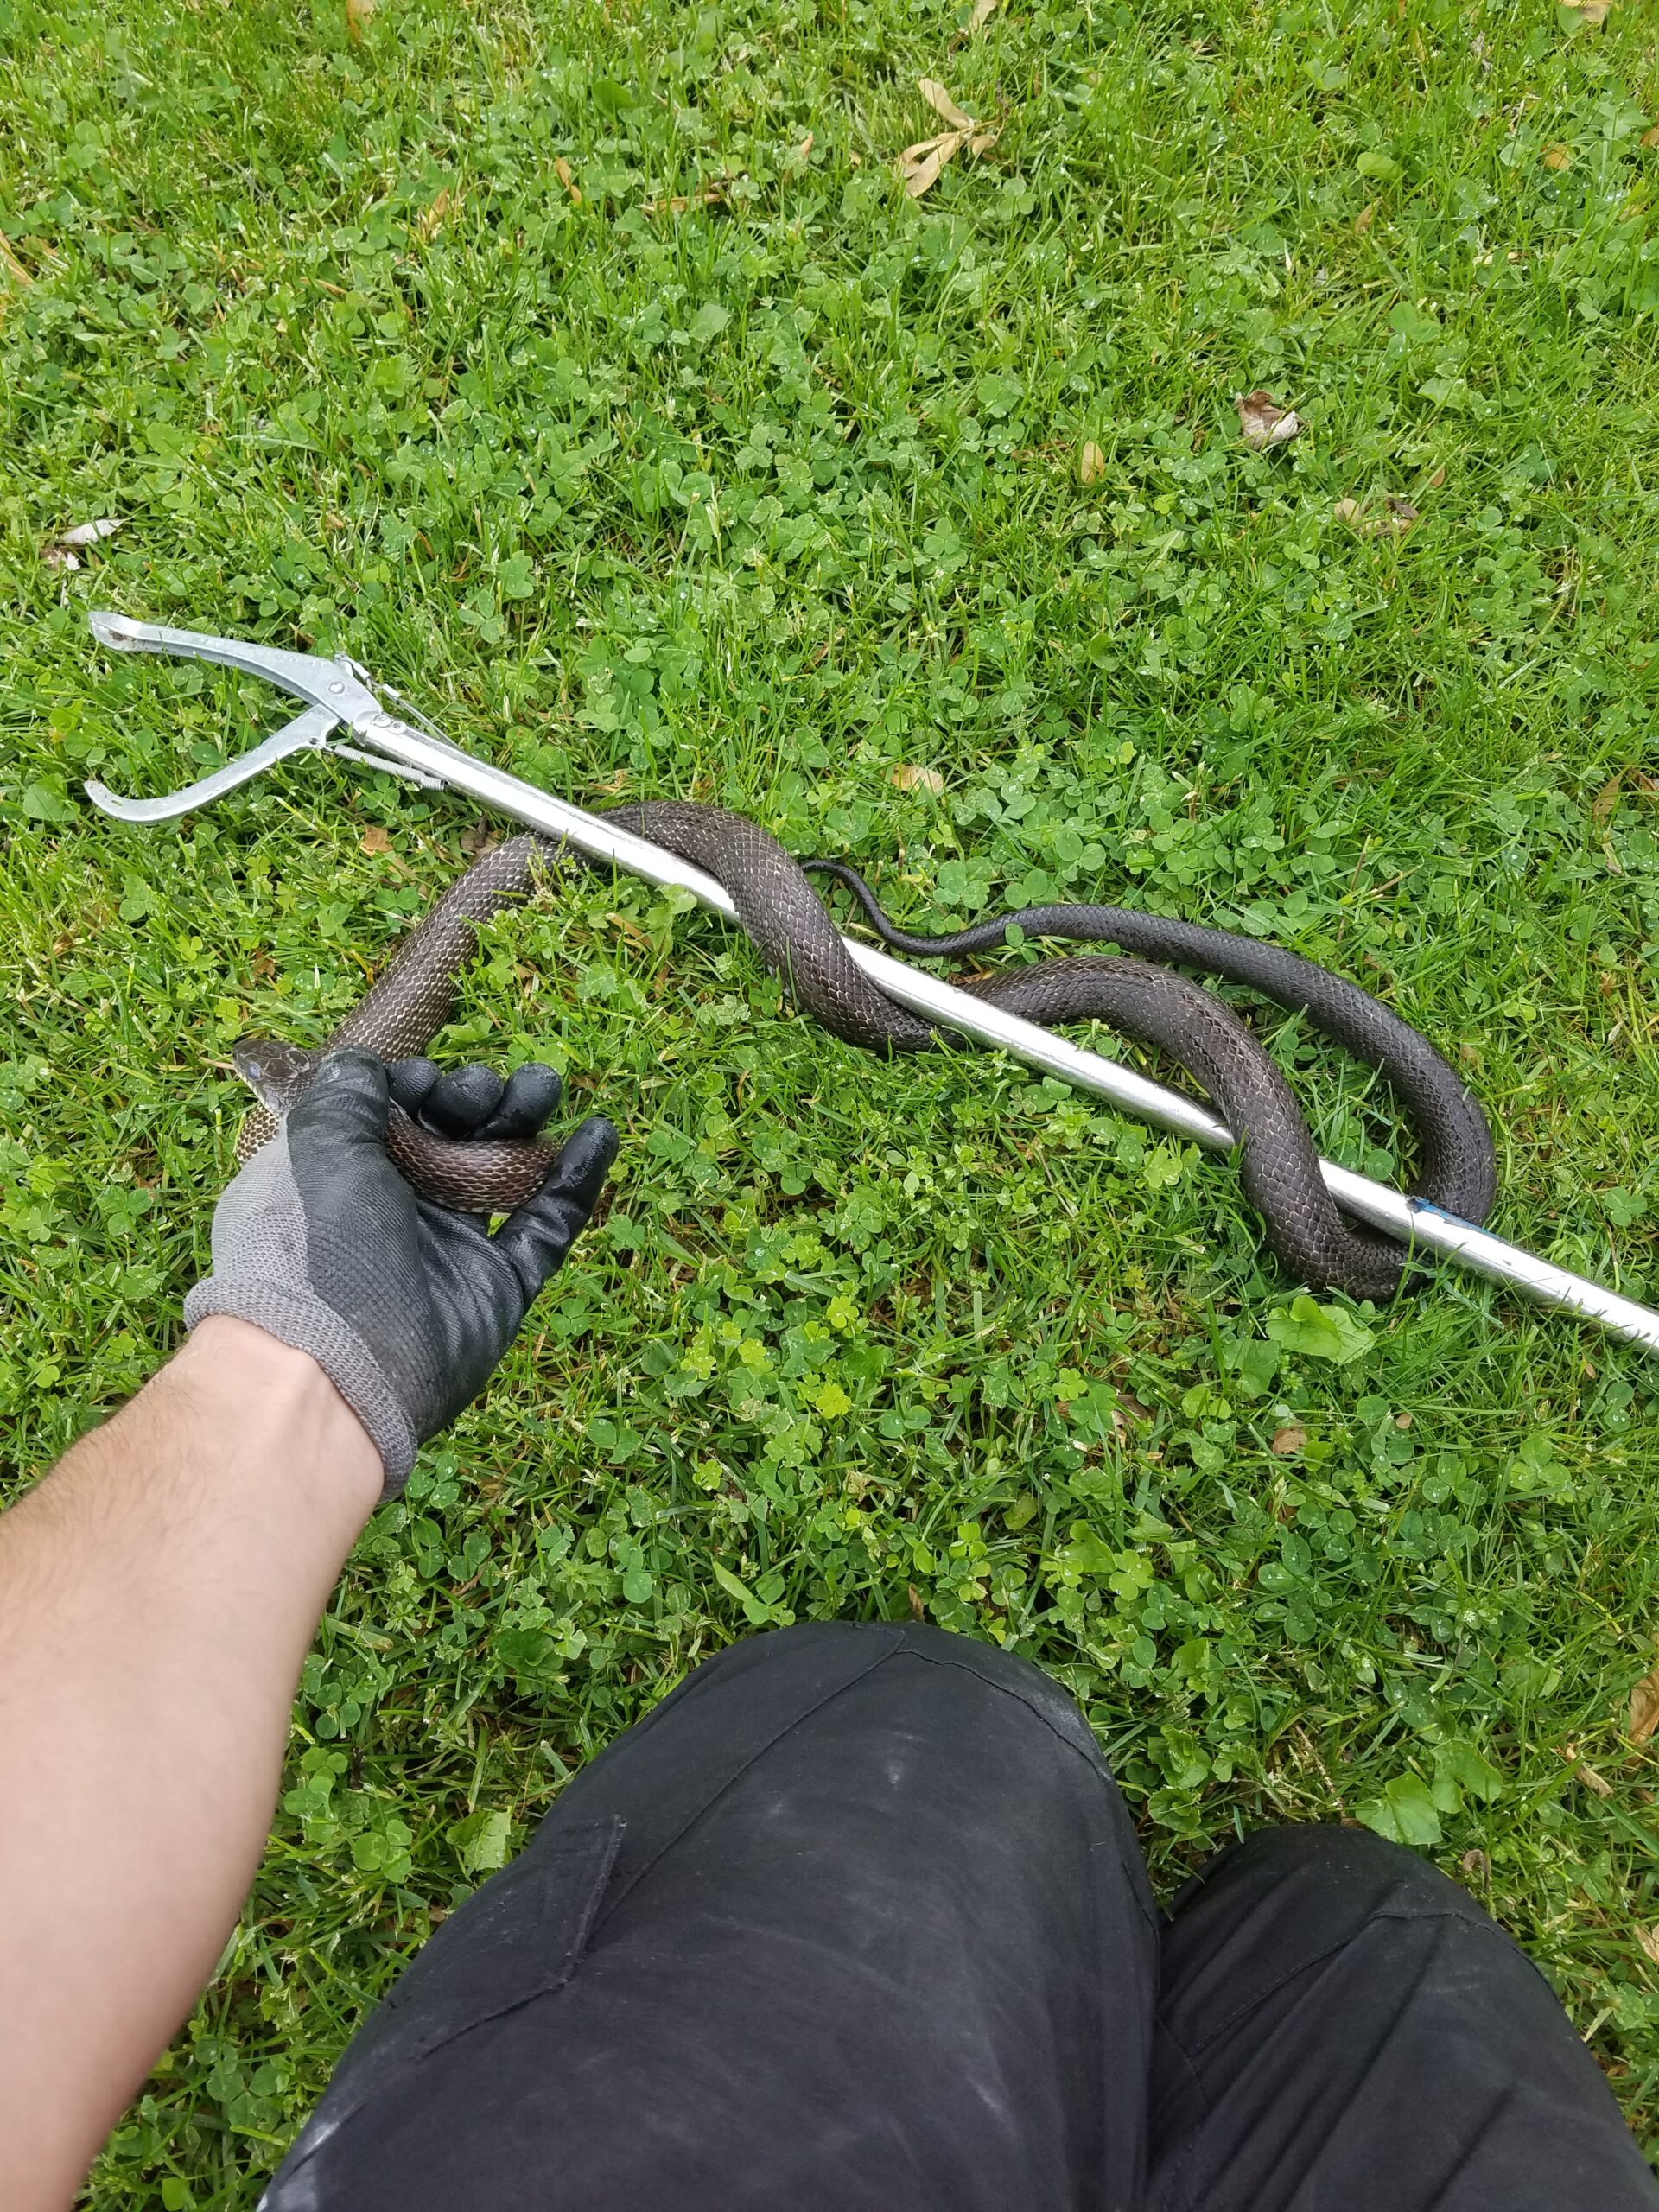 VA snake removal